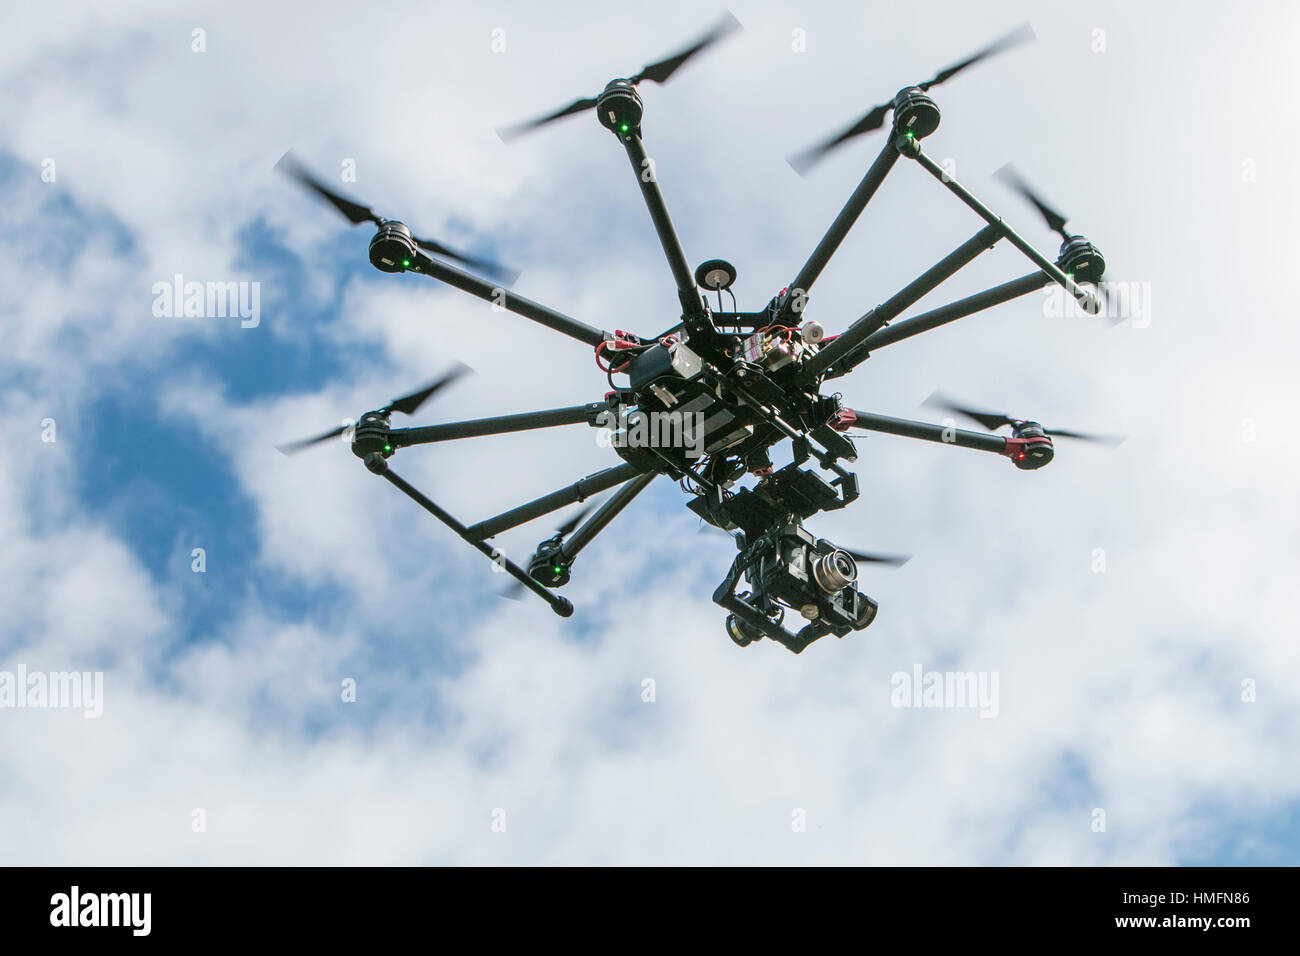 Una telecamera drone in azione contro un cielo nuvoloso Foto Stock